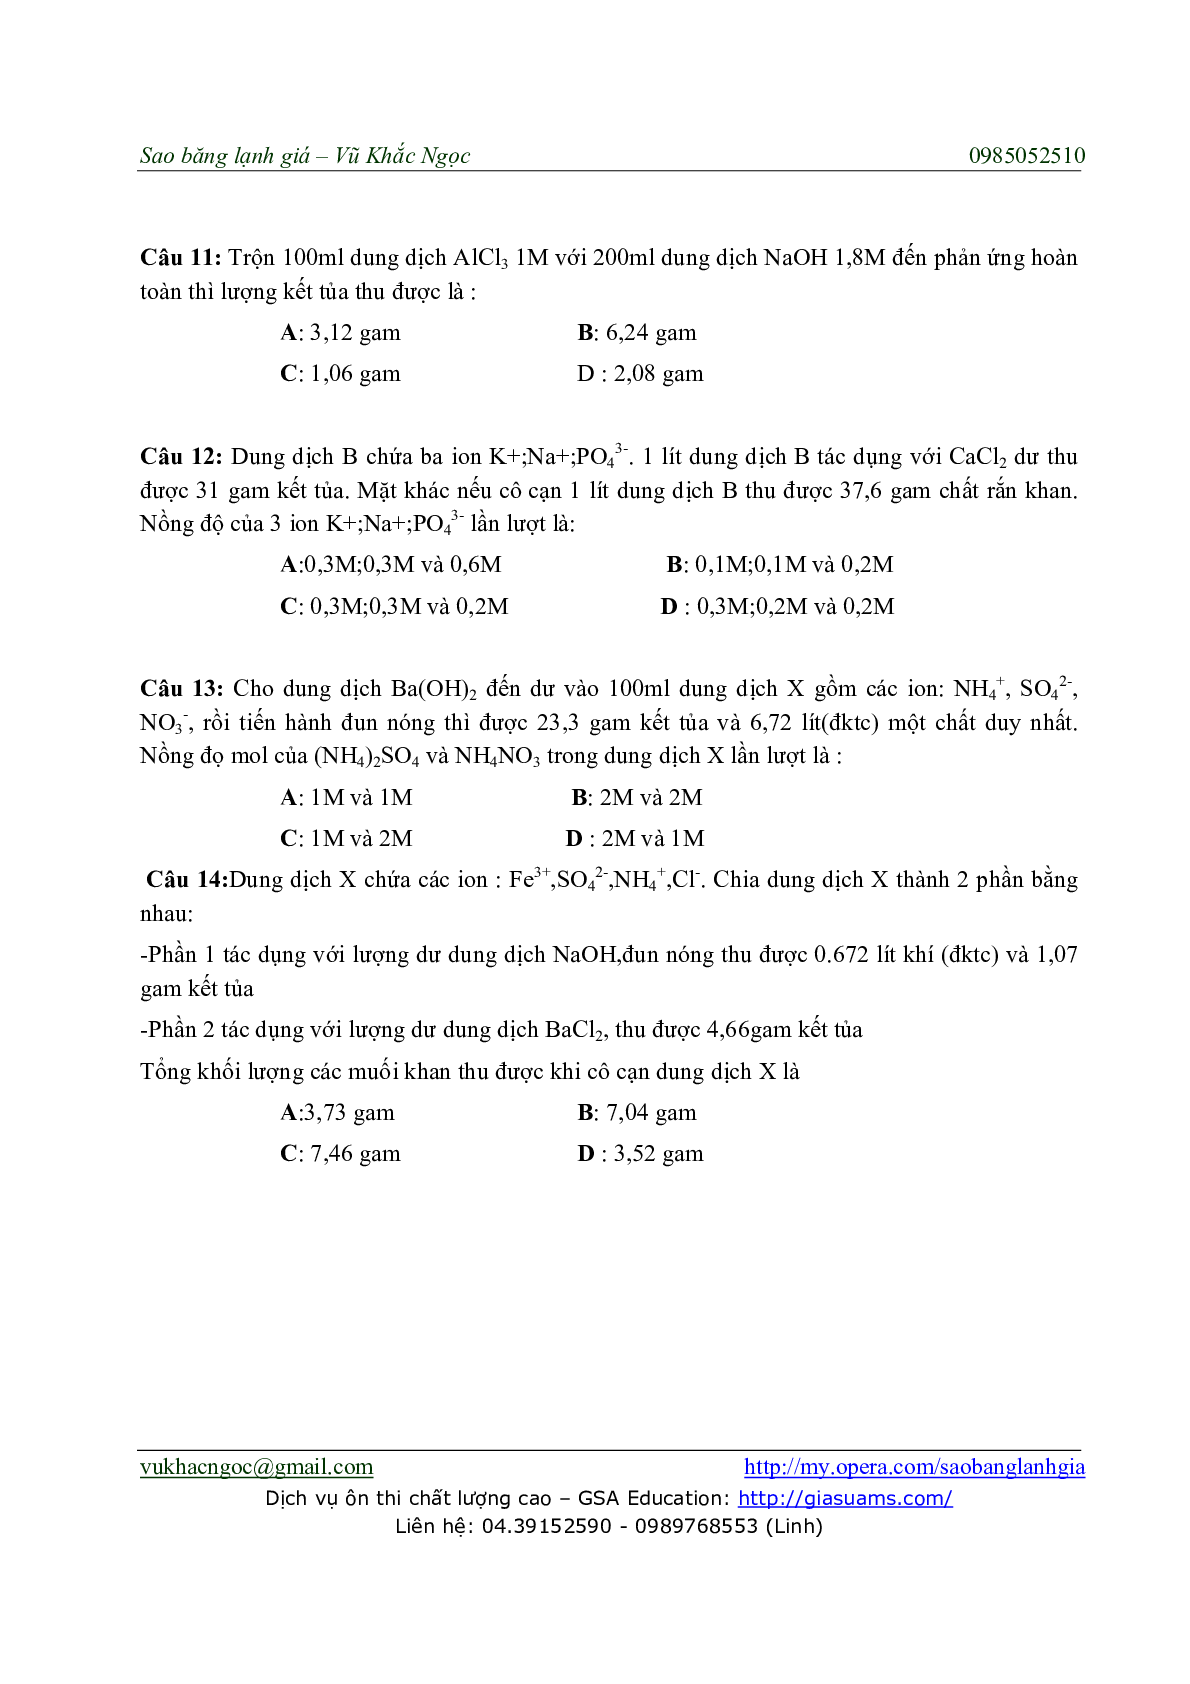 Chuyên đề Phương pháp Bảo toàn điện tích môn Hóa học lớp 11 (trang 7)